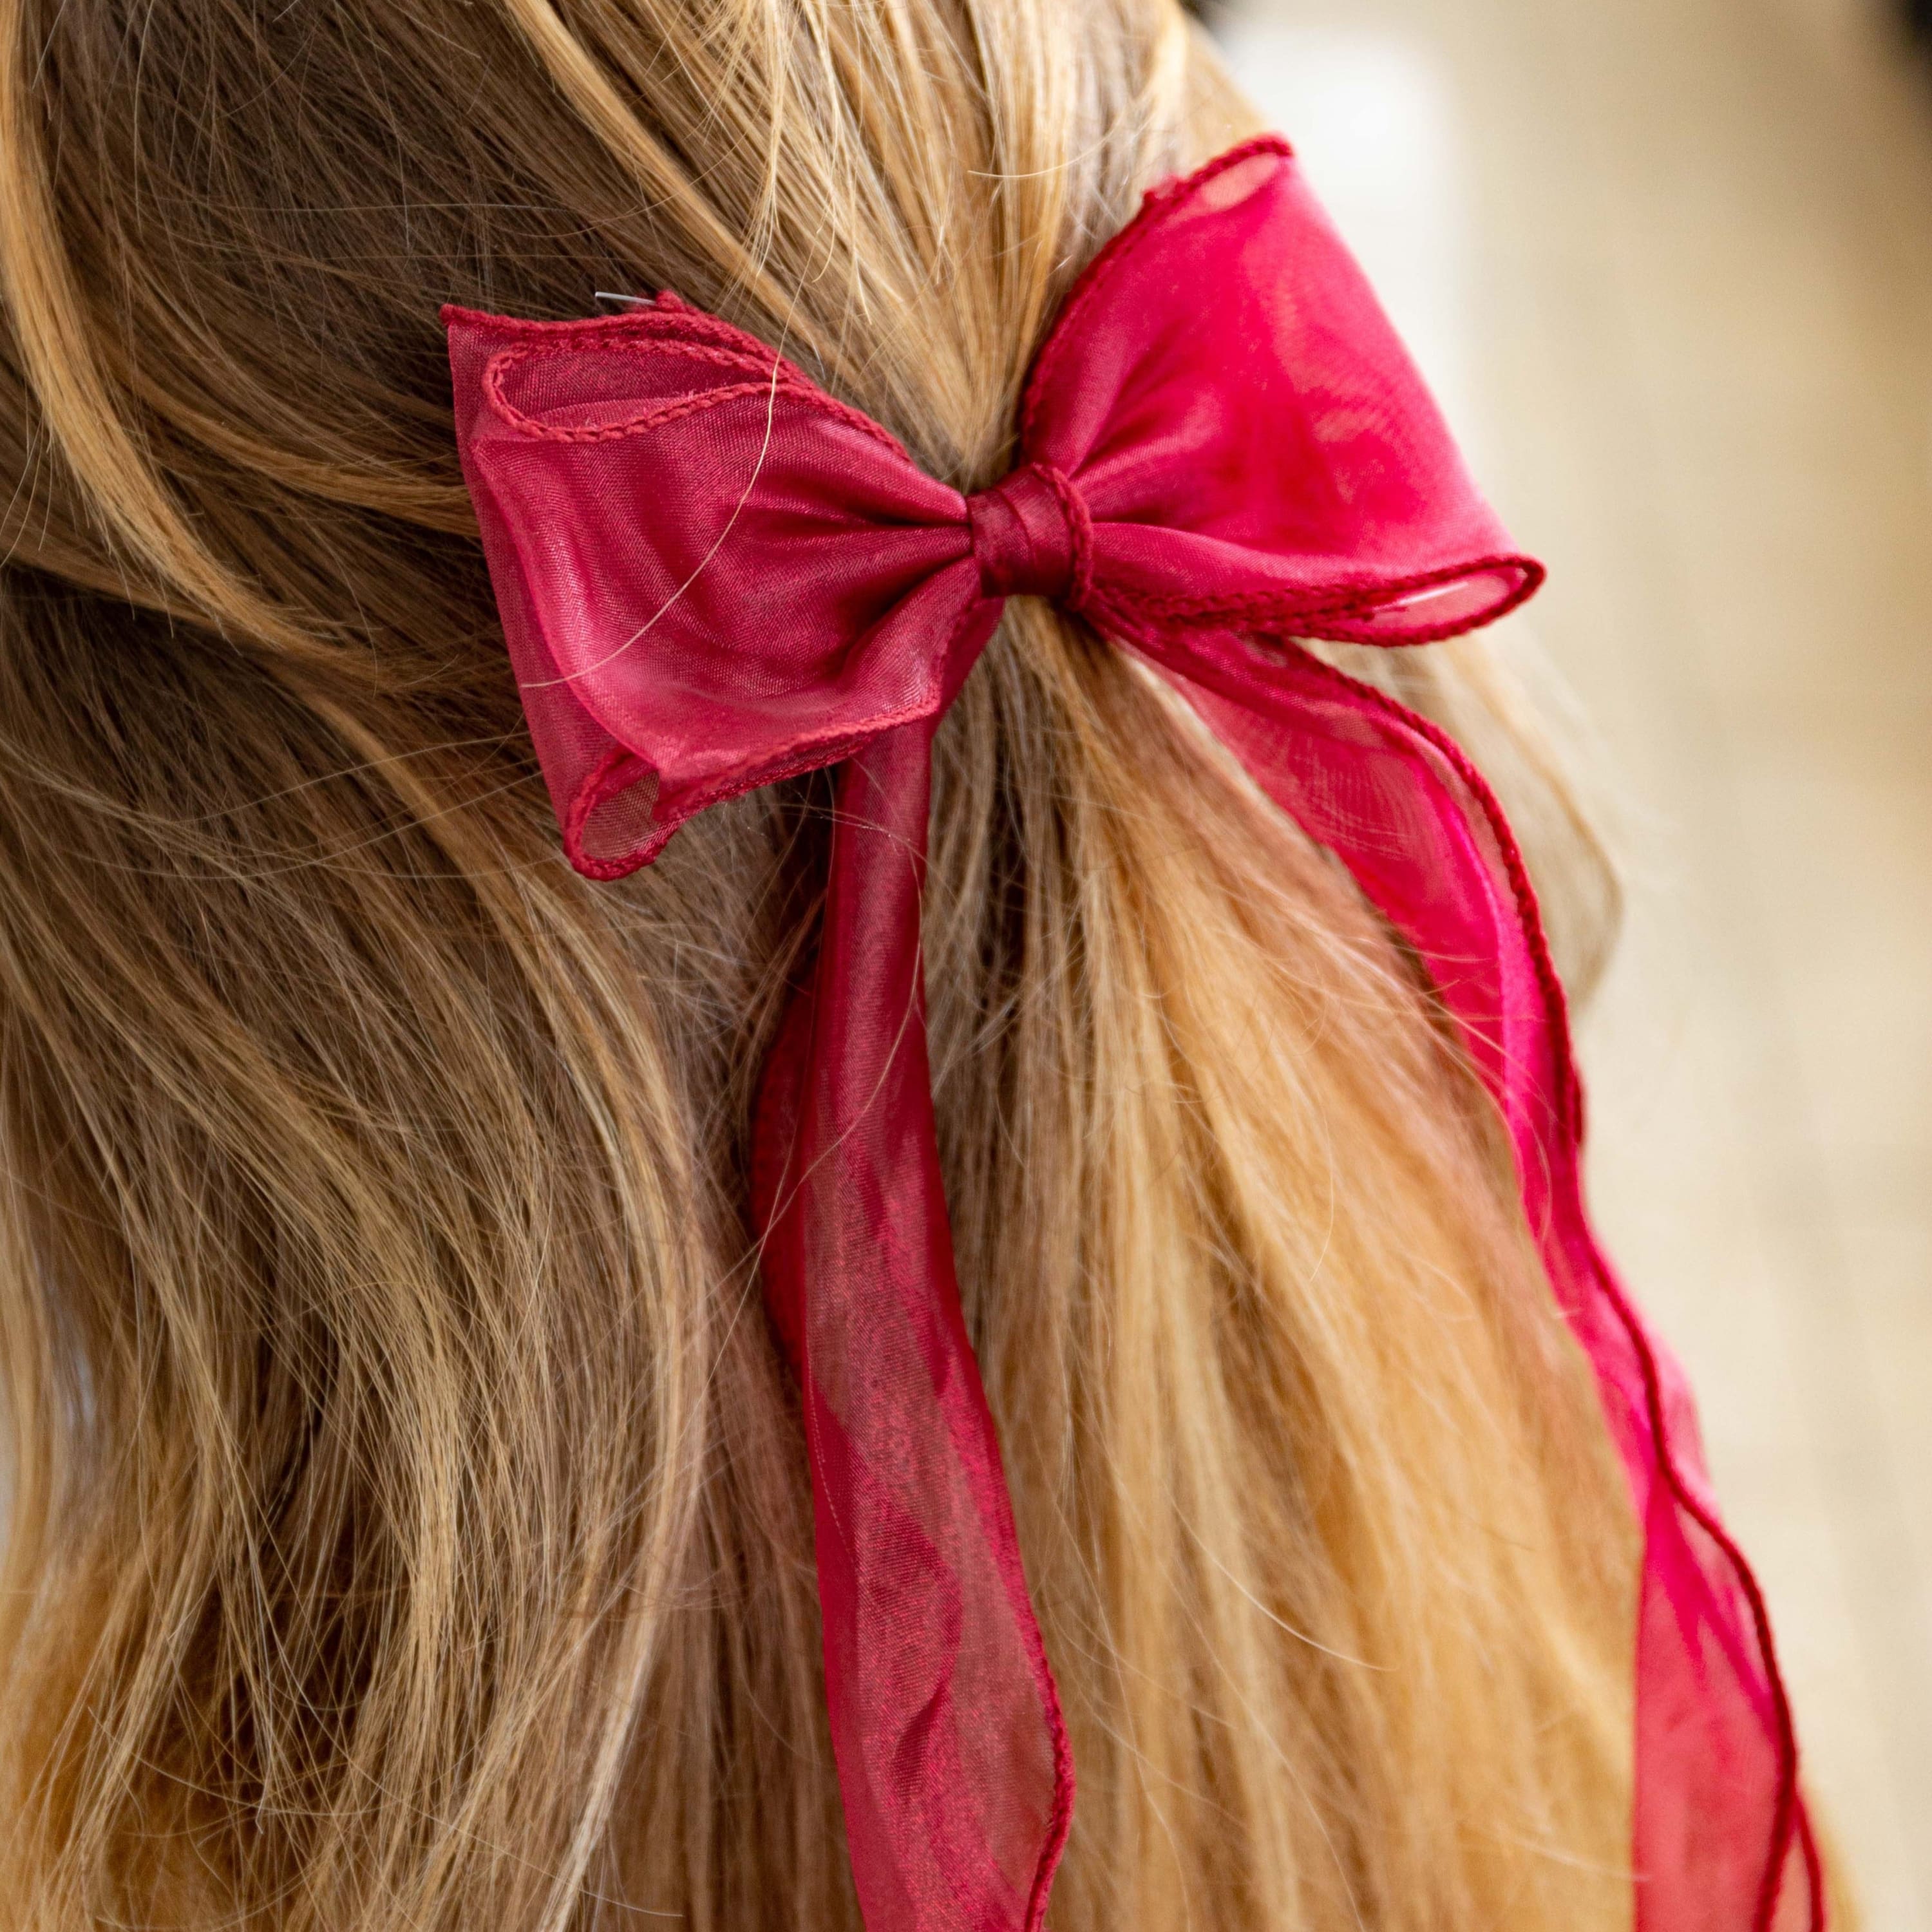 Fermaglio per capelli in organza - Rosso - Foulard